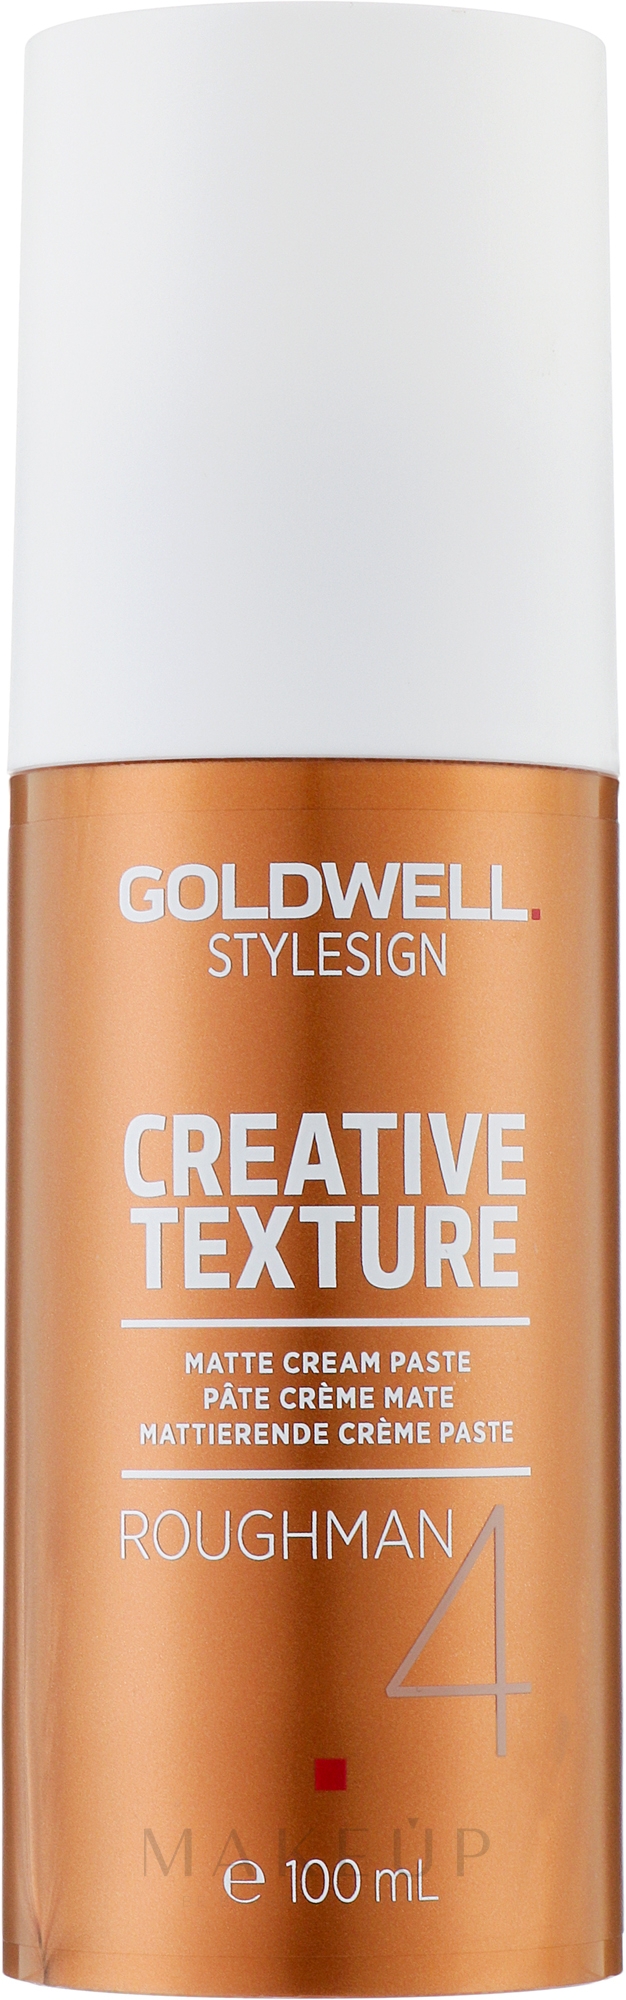 Cremige Haarpaste mit Matt-Effekt - Goldwell Style Sign Creative Texture Roughman Matte Cream Paste — Foto 100 ml